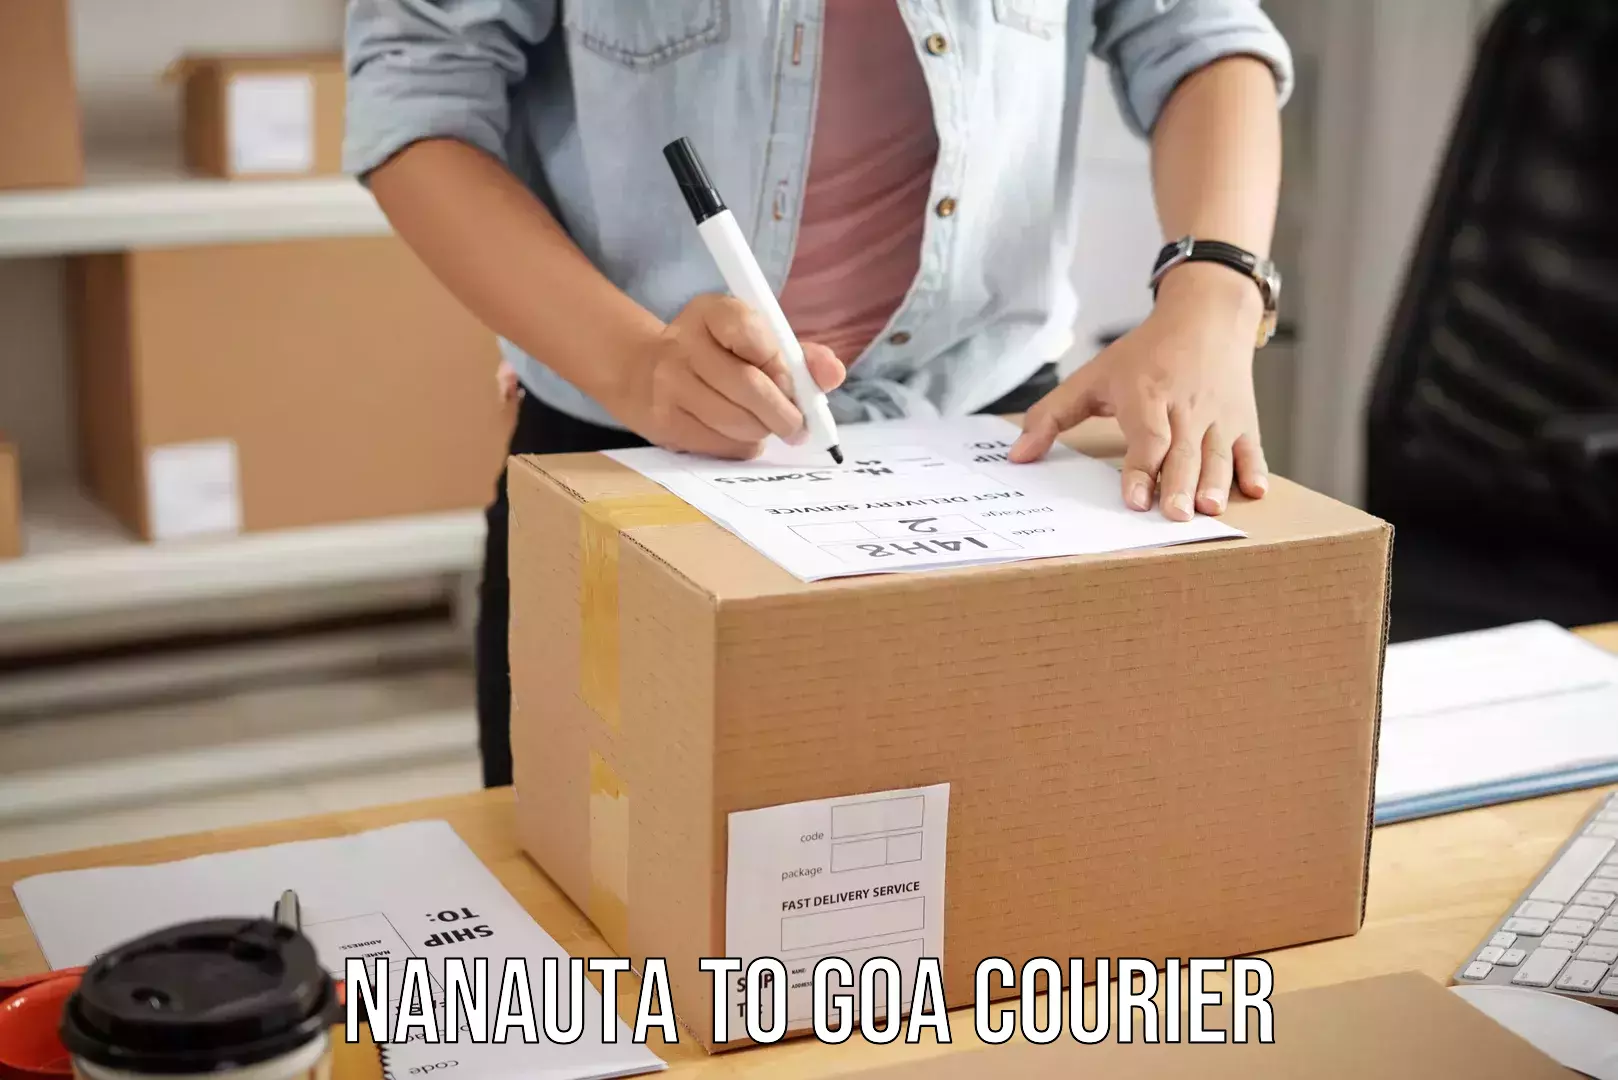 Luggage courier excellence Nanauta to Goa